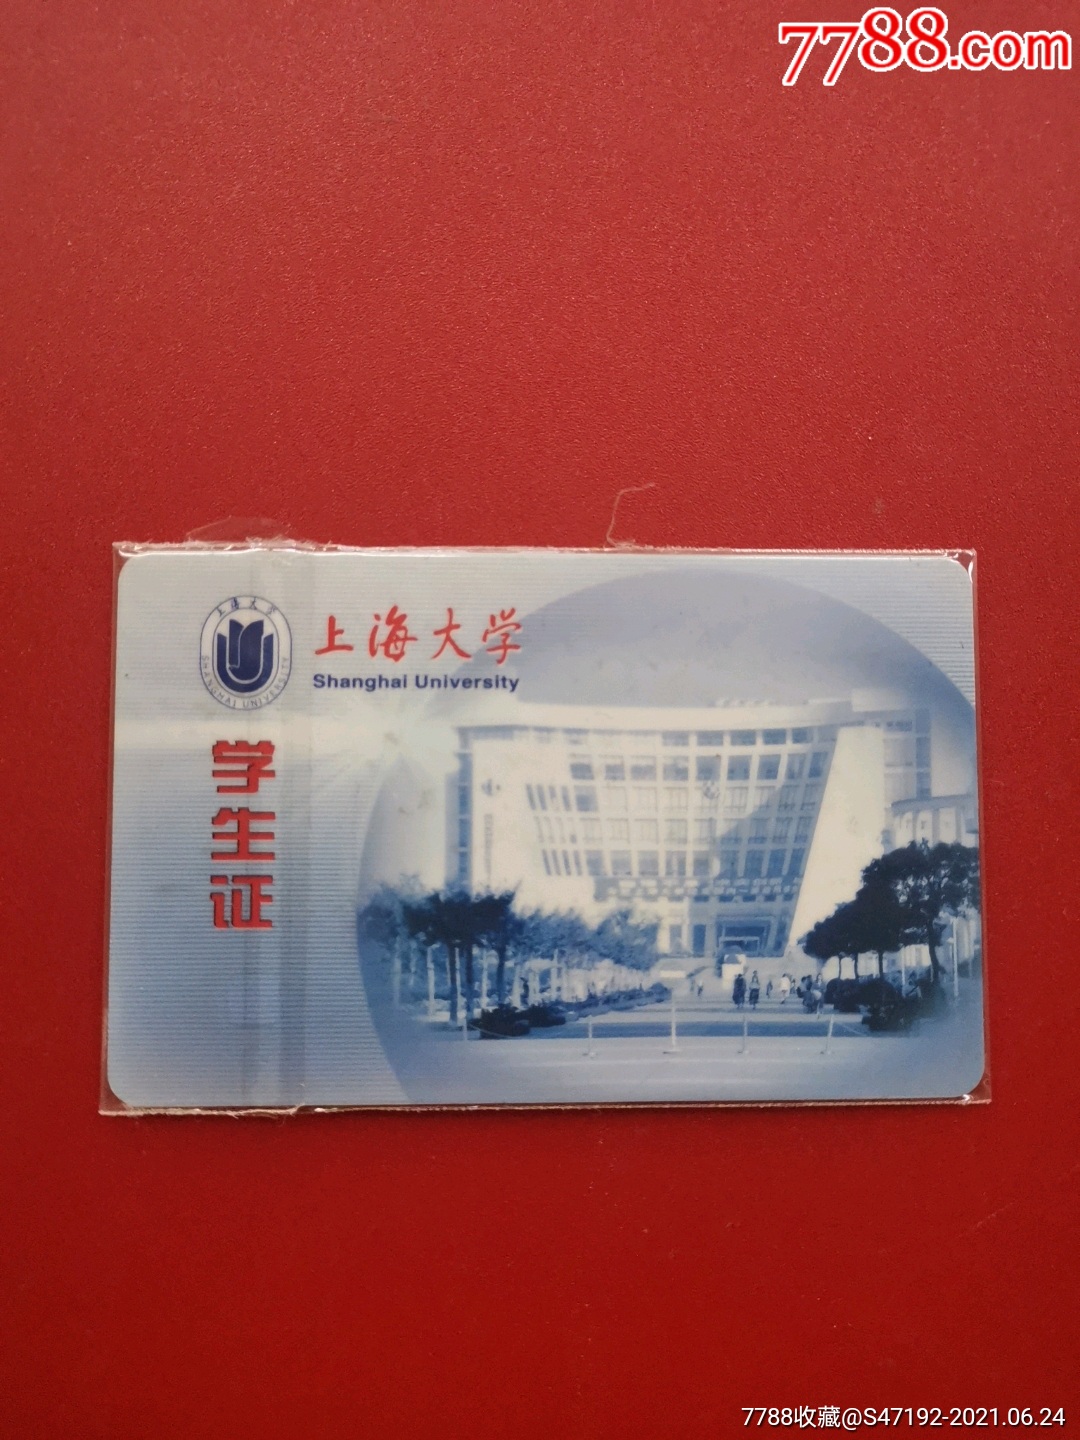 5品99上海理工大学卡$258.5品99上海大学卡$208.